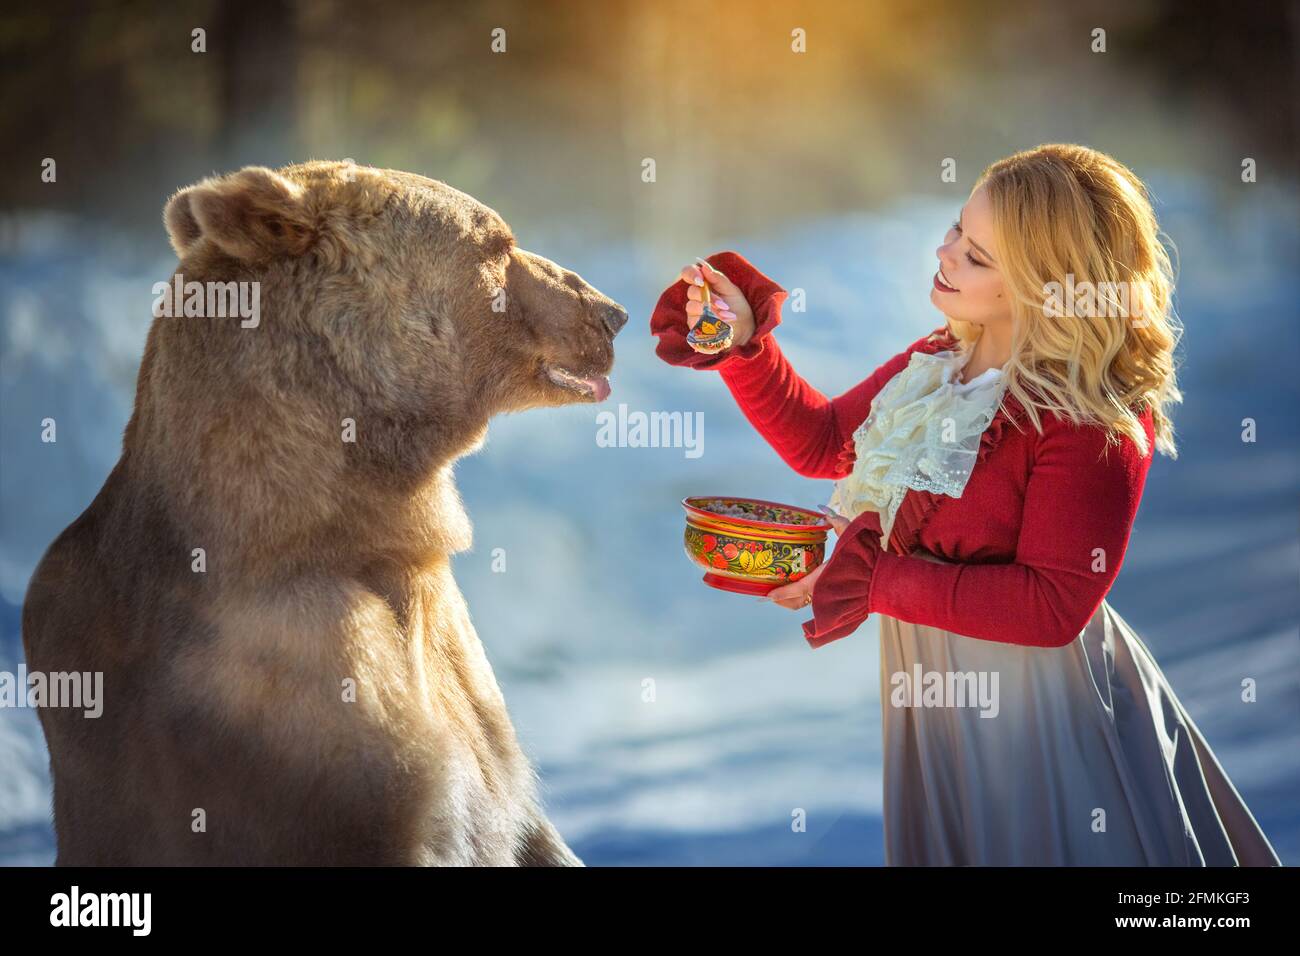 Alle Modelle waren begeistert, mit einem Bären zu arbeiten. MOSKAU, RUSSLAND: TREFFEN SIE DEN echten Bären, der von seiner Mutter verlassen und von Menschen aufgezogen wurde, die jetzt einen fl Stockfoto